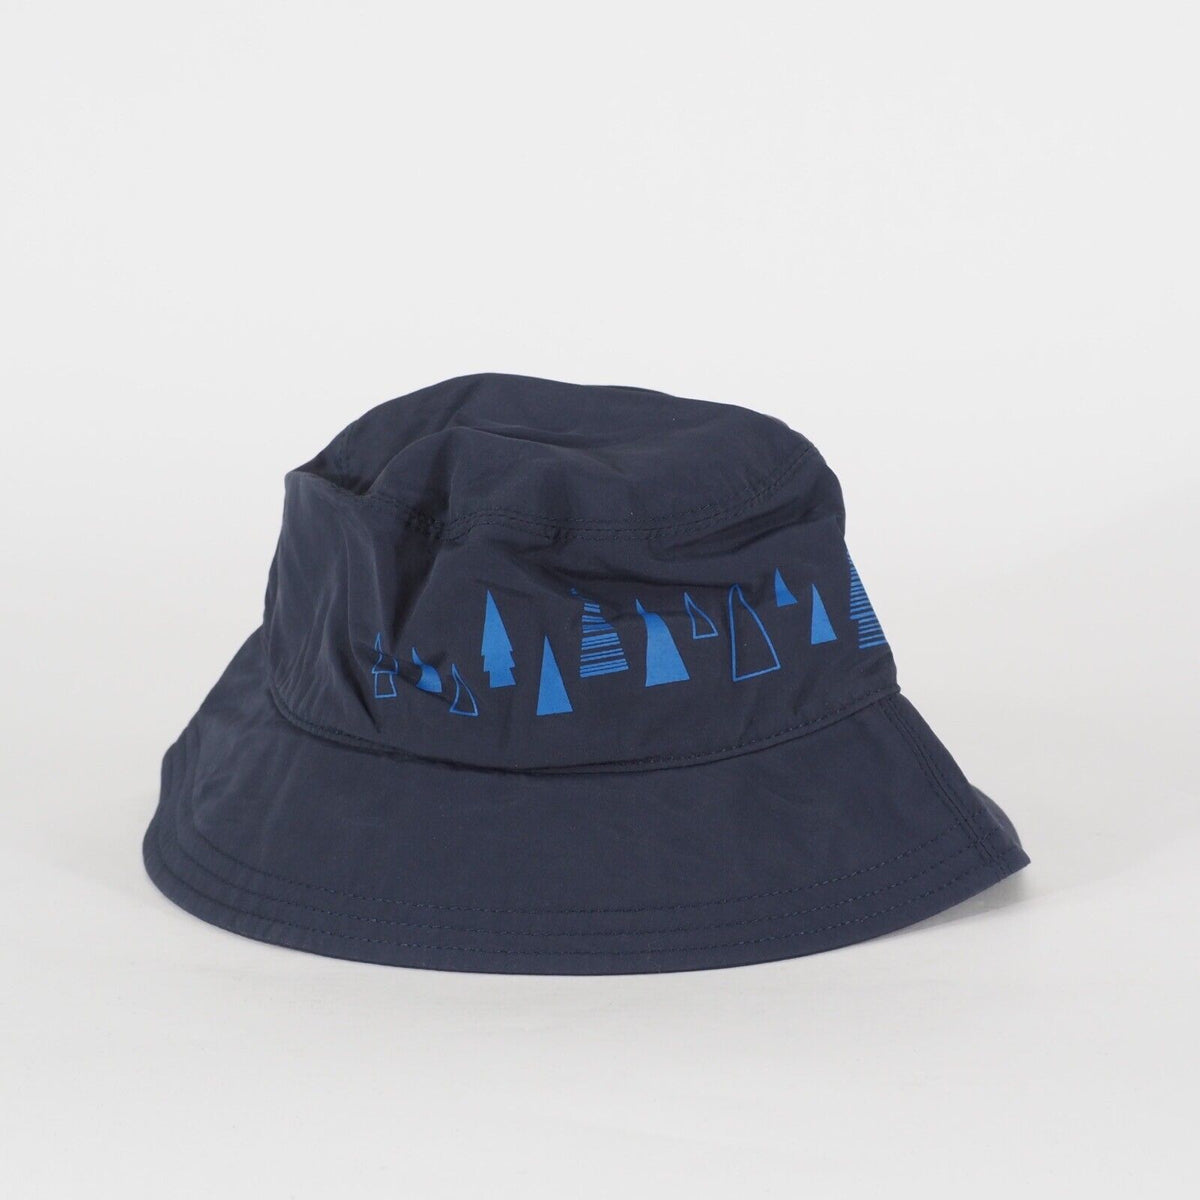 Kids Jack Wolfskin Forest Glade Hat 1904021 Navy Casual Outdoor Bucket Hat